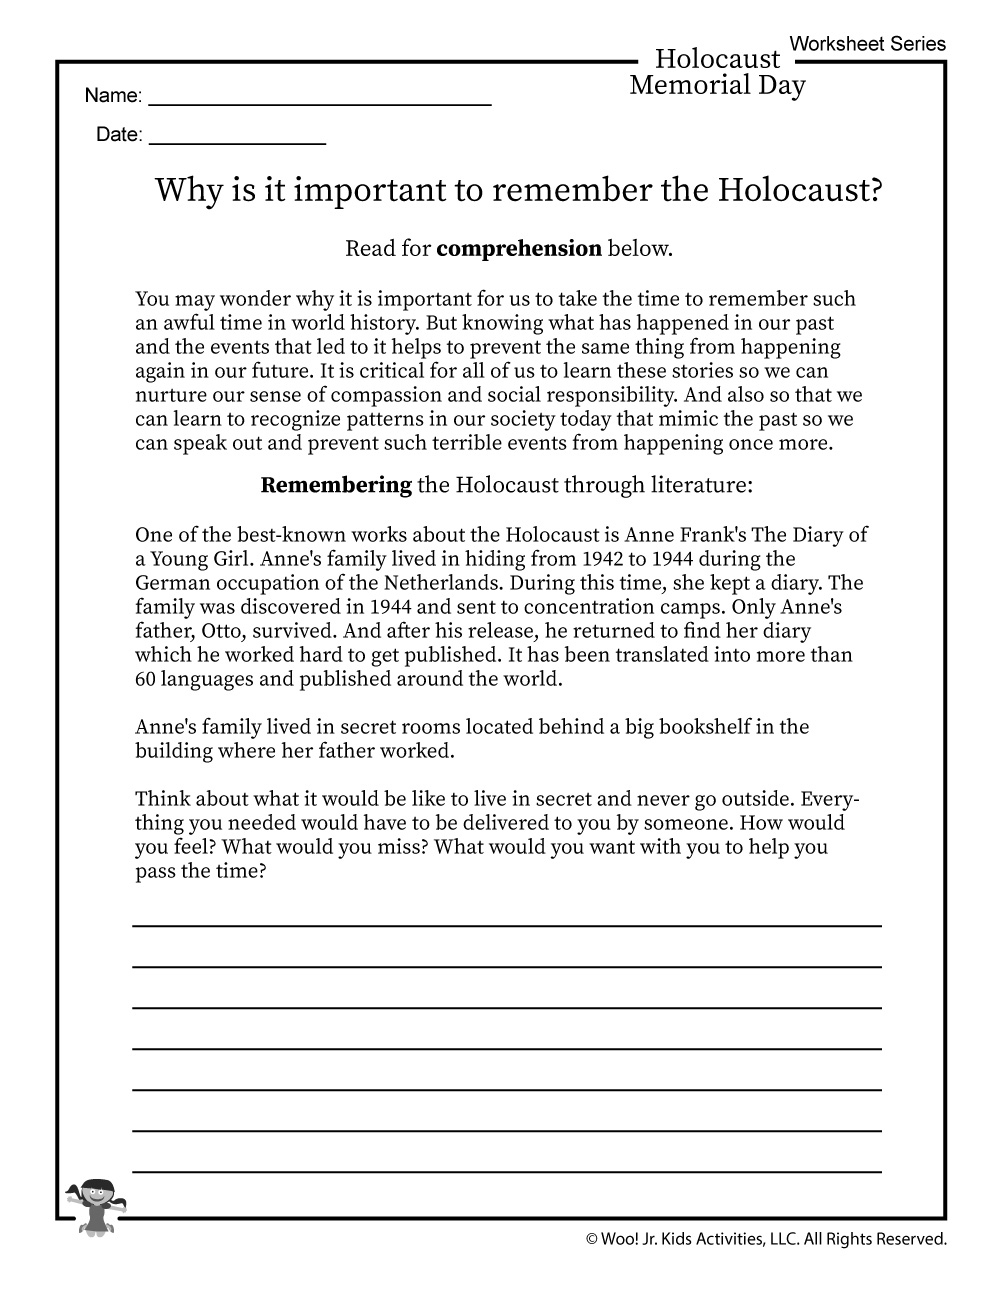 Remembering Anne Frank Worksheet | Woo! Jr. Kids Activities | Holocaust Printable Worksheets